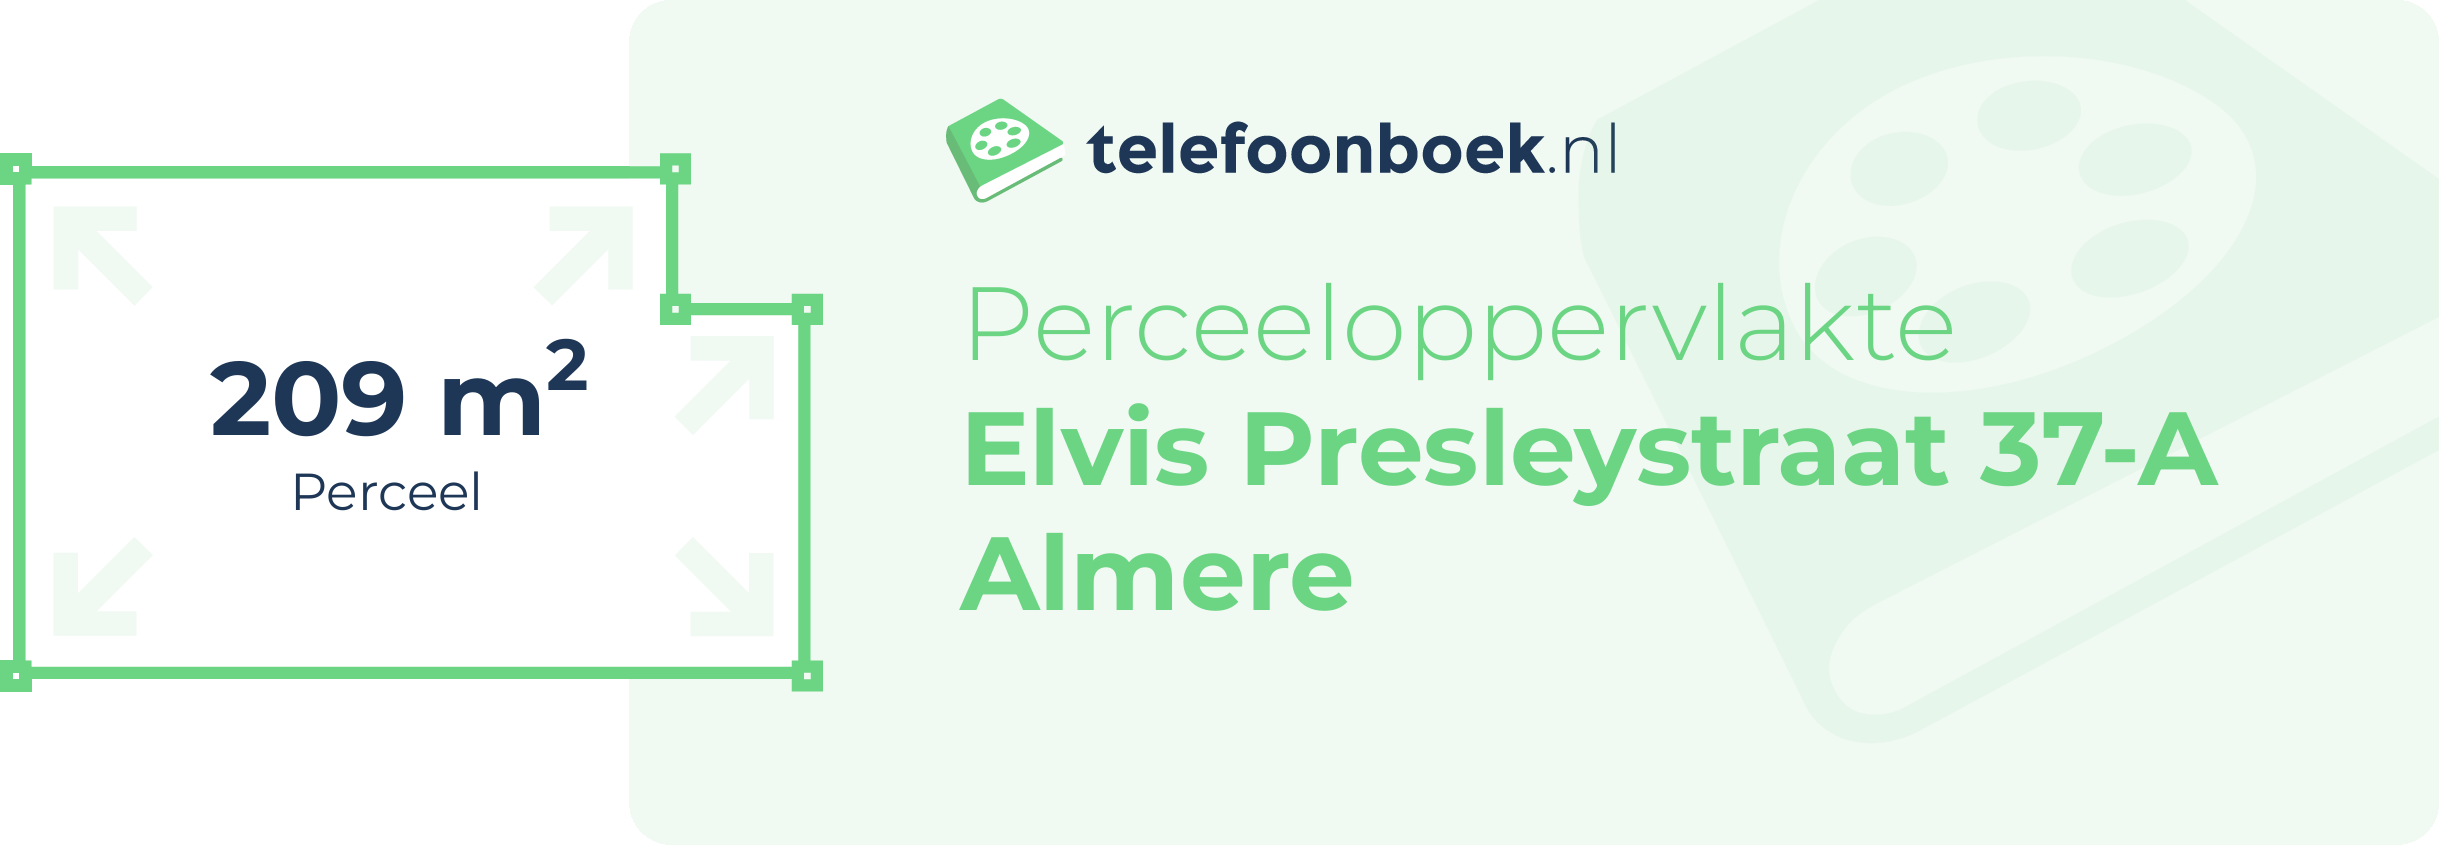 Perceeloppervlakte Elvis Presleystraat 37-A Almere